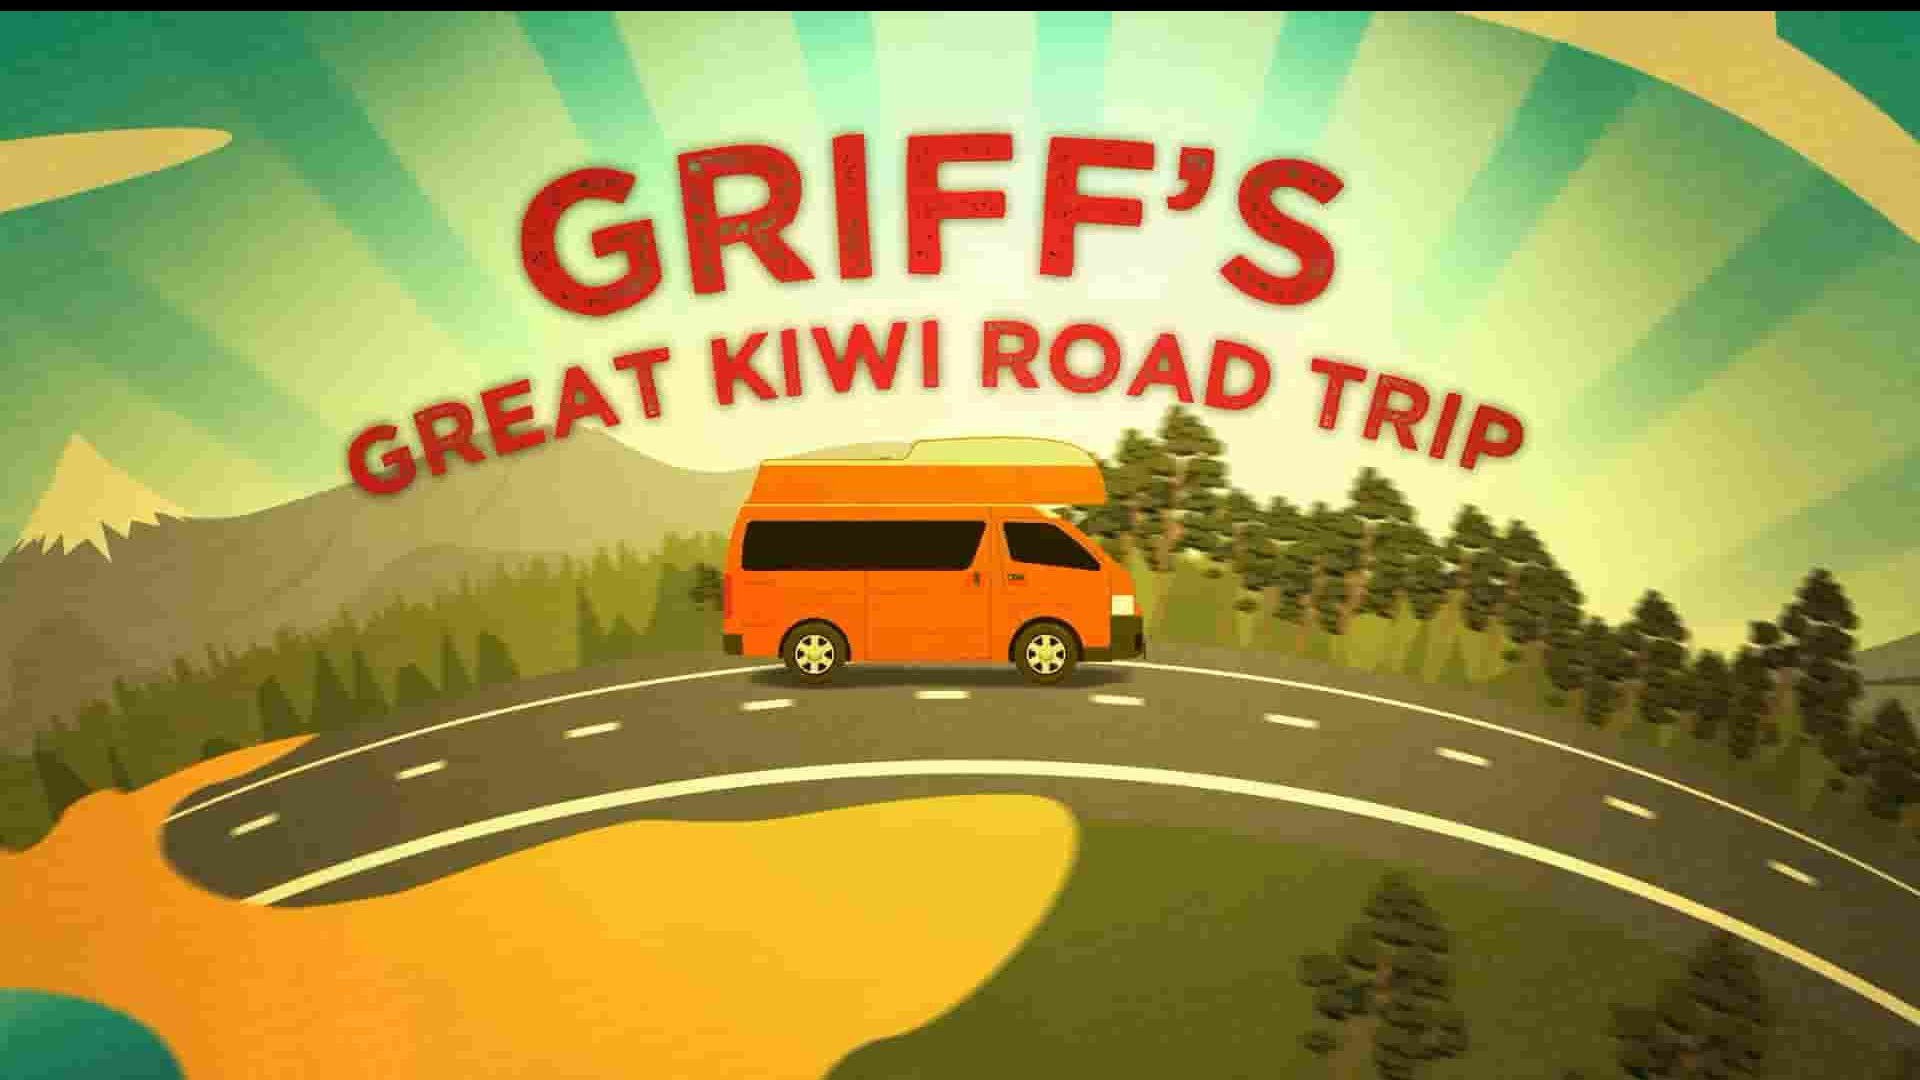 BBC纪录片《格里夫的新西兰公路之旅 Griff